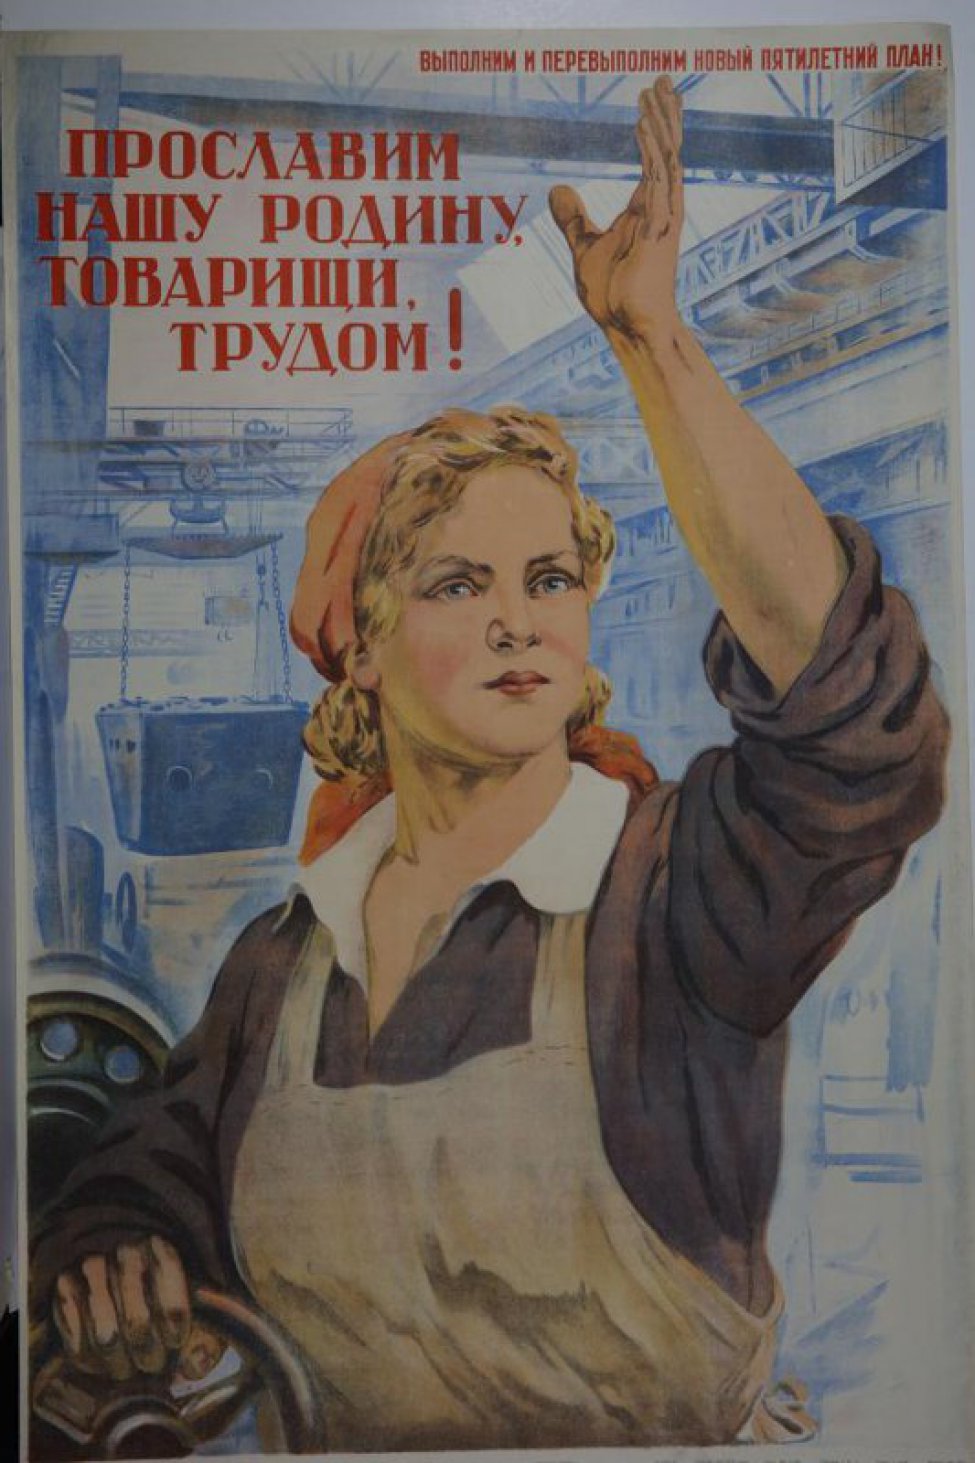 Изображена девушка - работница в цехе завода, с поднятой вверх левой рукой. Над головой ее надпись: "Прославим нашу Родину, товарищи, трудом!" .